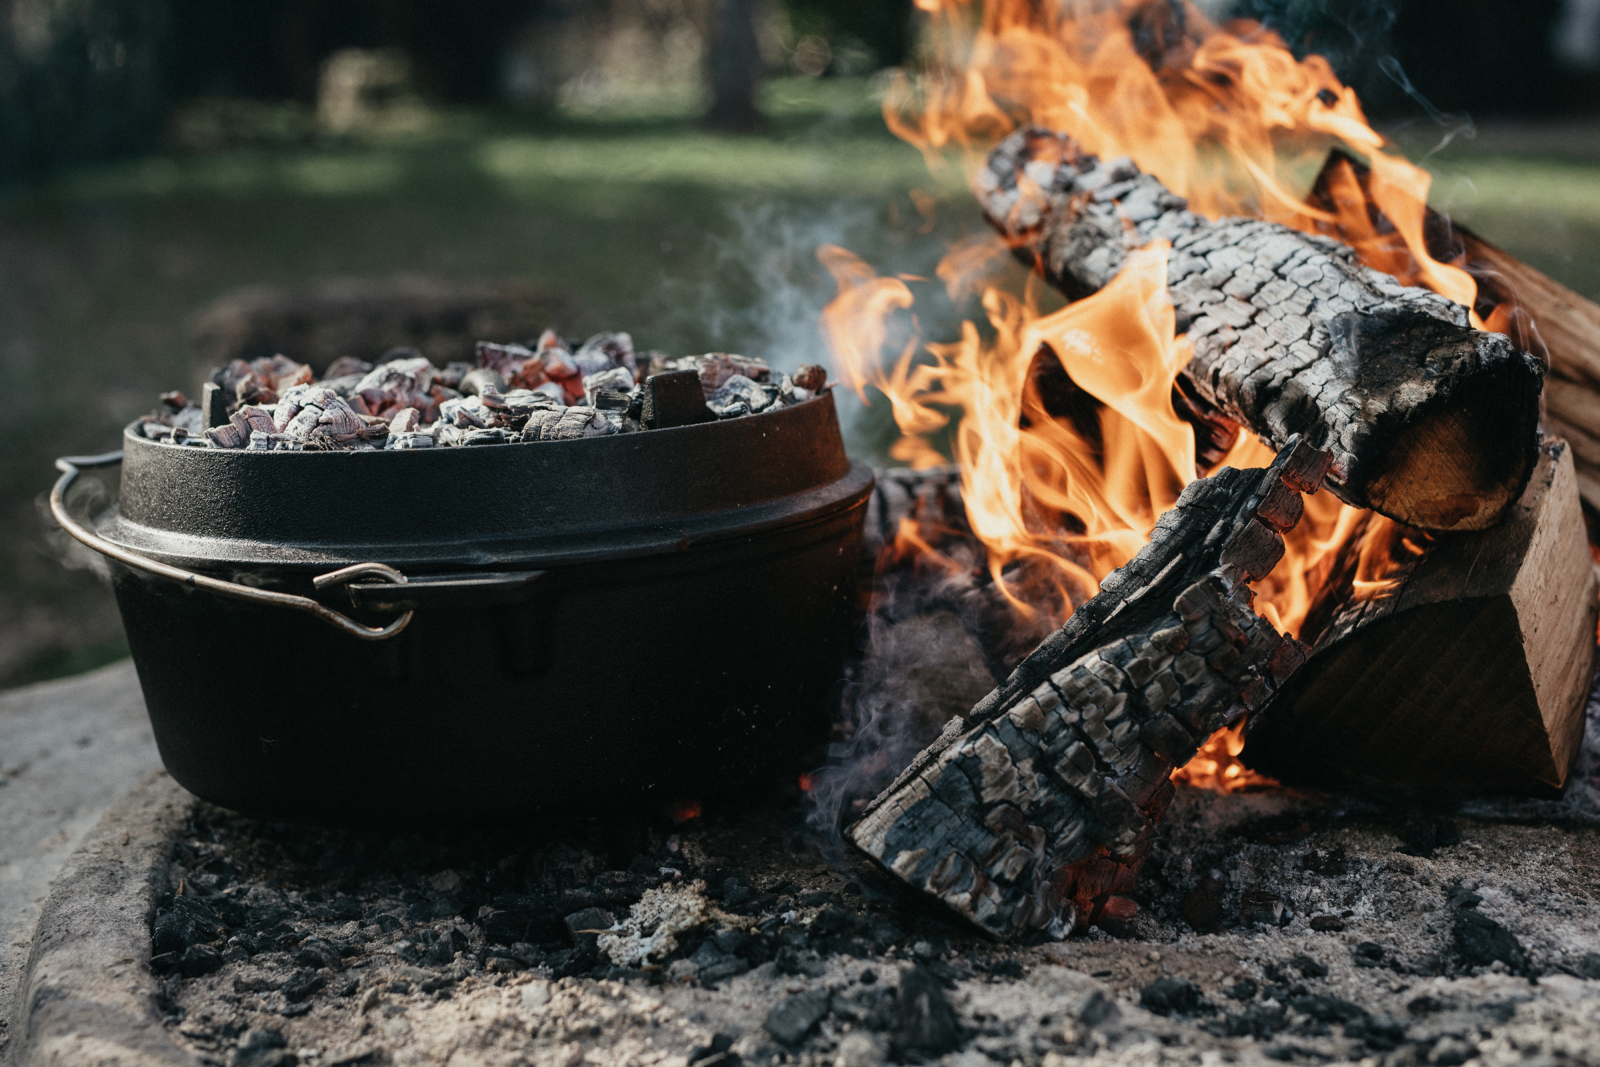 Faszination Feuer - Wärmequelle zum Leben und Kochen.